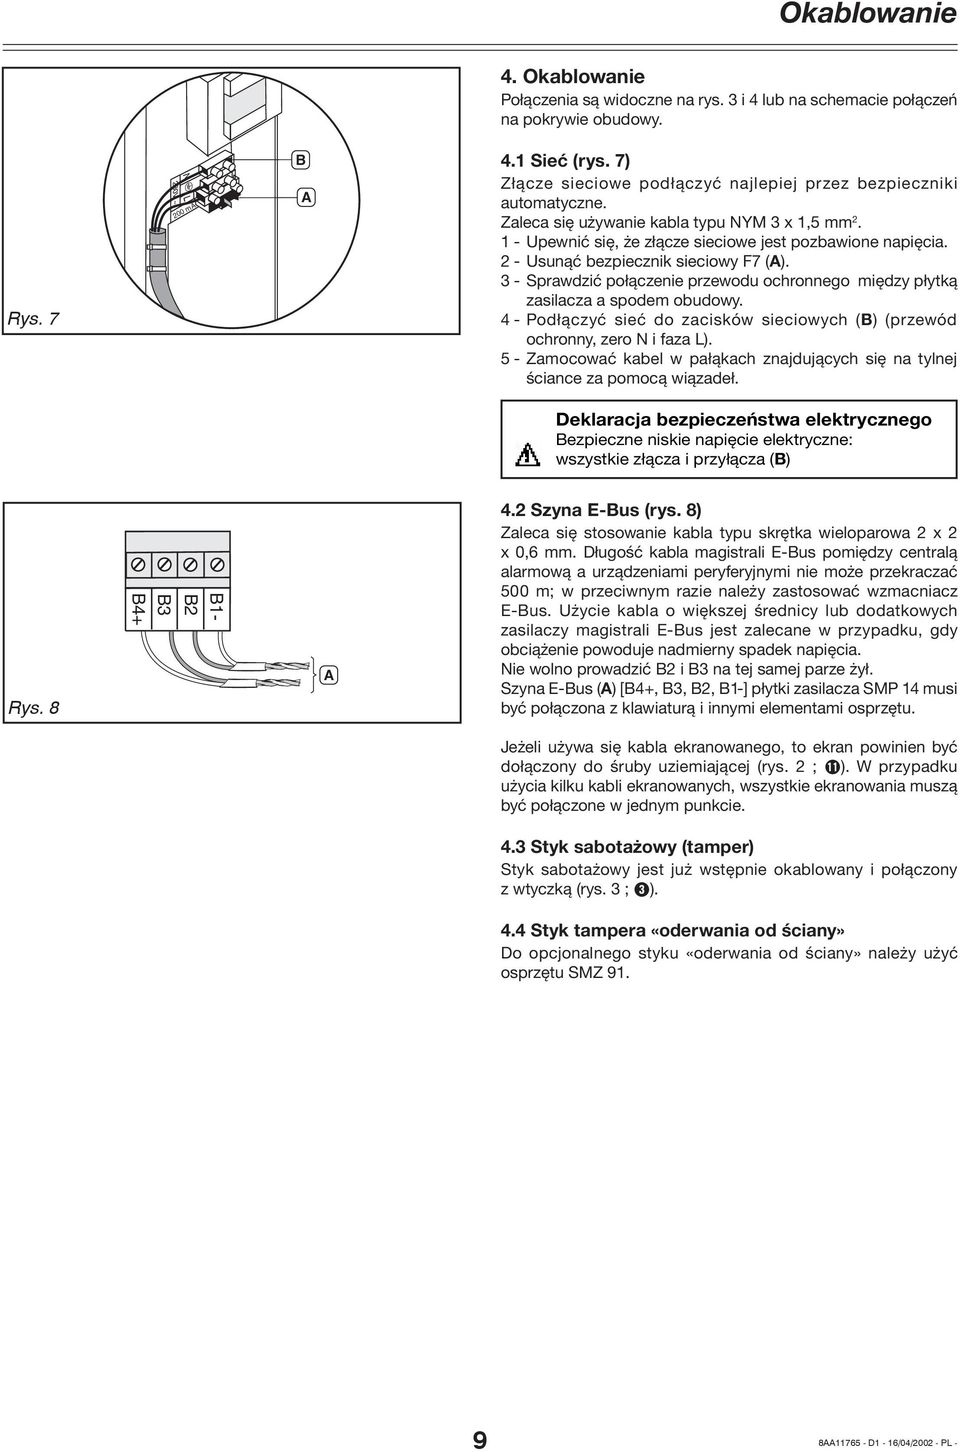 2 - Usunąć bezpiecznik sieciowy F7 (A). 3 - Sprawdzić połączenie przewodu ochronnego między płytką zasilacza a spodem obudowy.